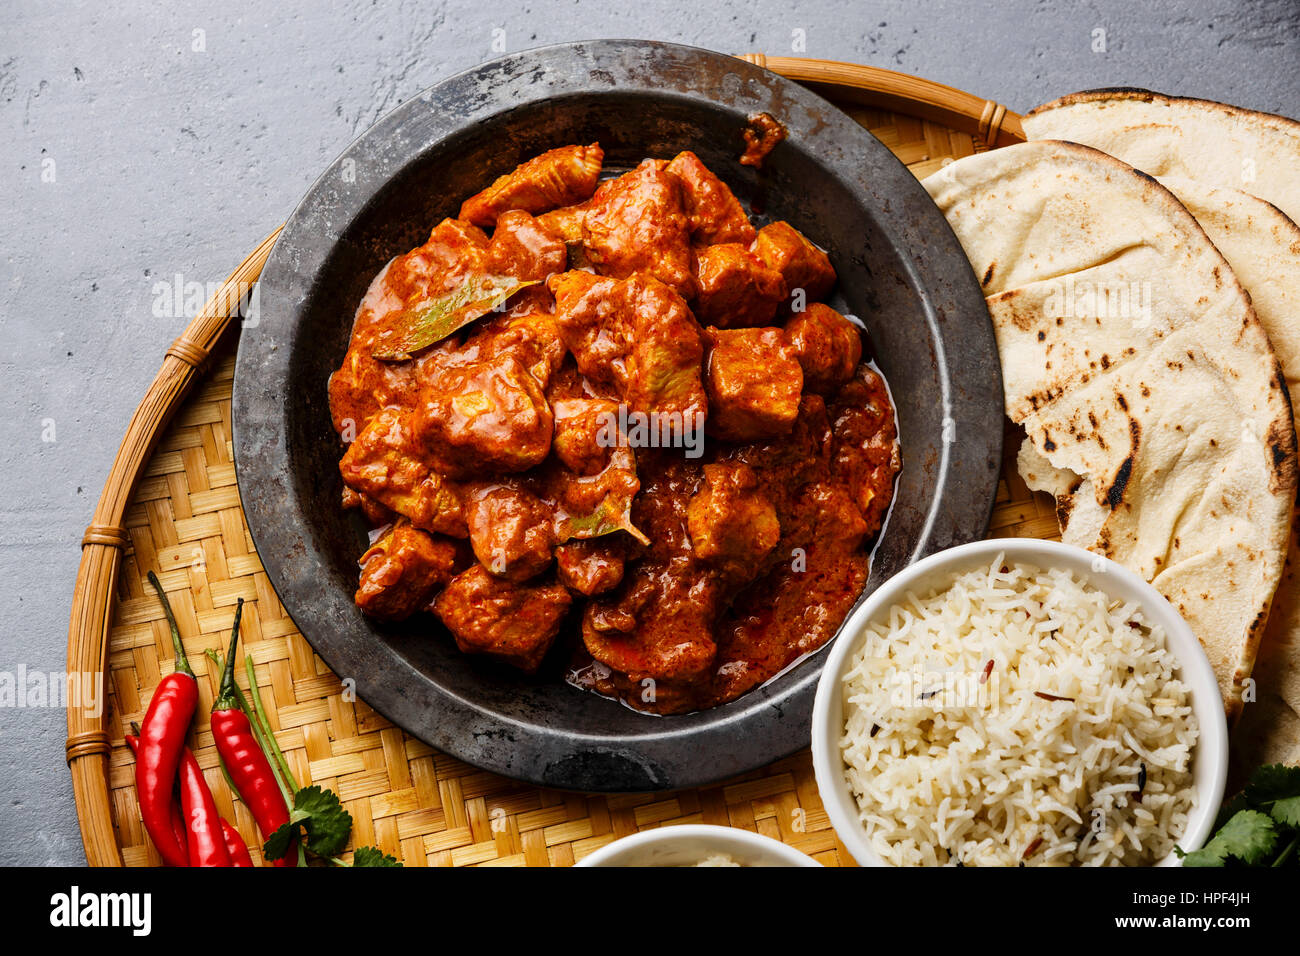 Poulet tikka masala curry épicé à la viande, le riz et la plaque métallique du pain naan close-up Banque D'Images